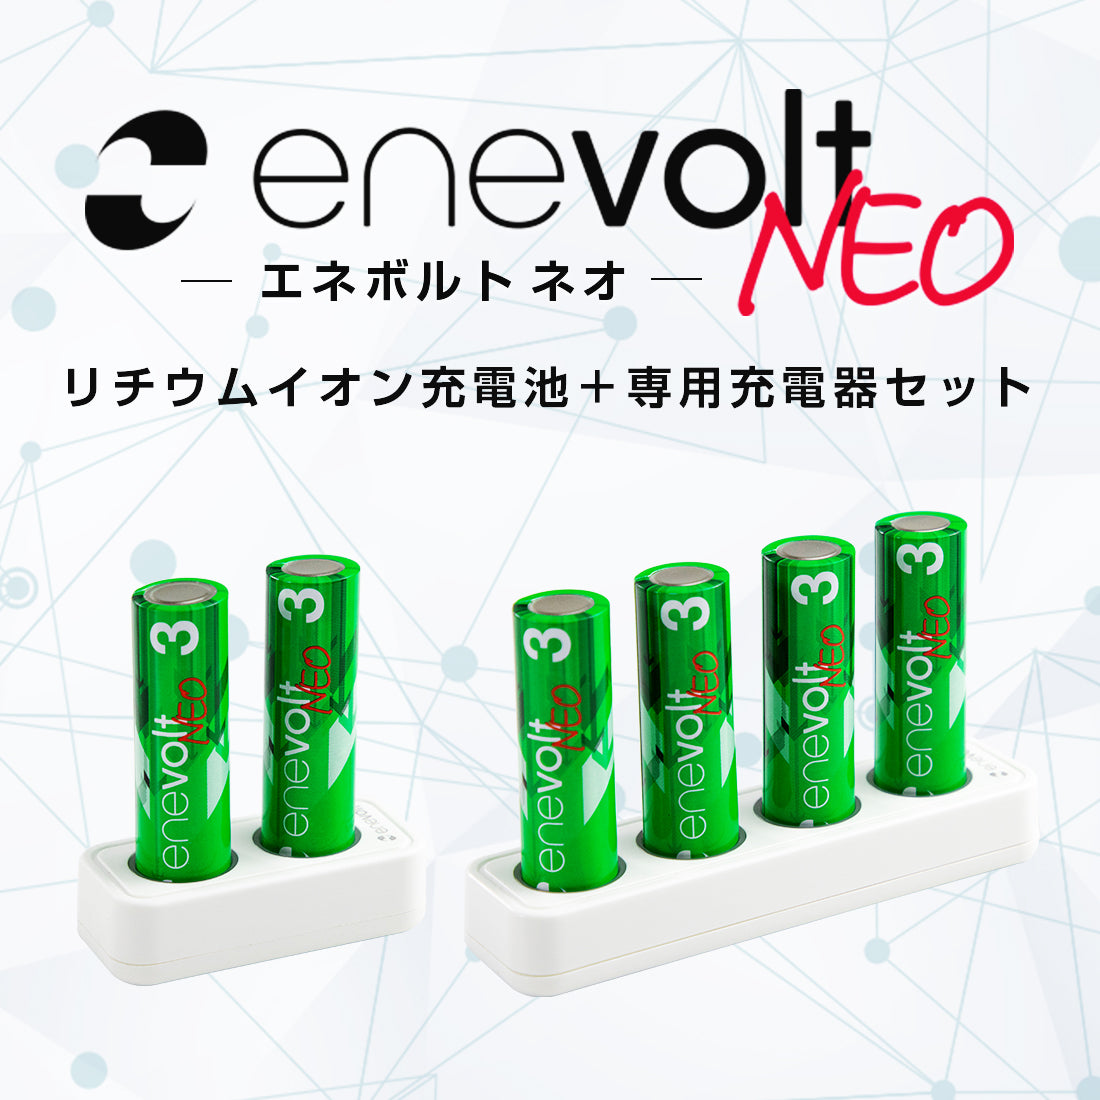 充電池ながら1.5V出力を実現し、手軽に充電できるリチウムイオン充電池「enevolt NEO」新発売